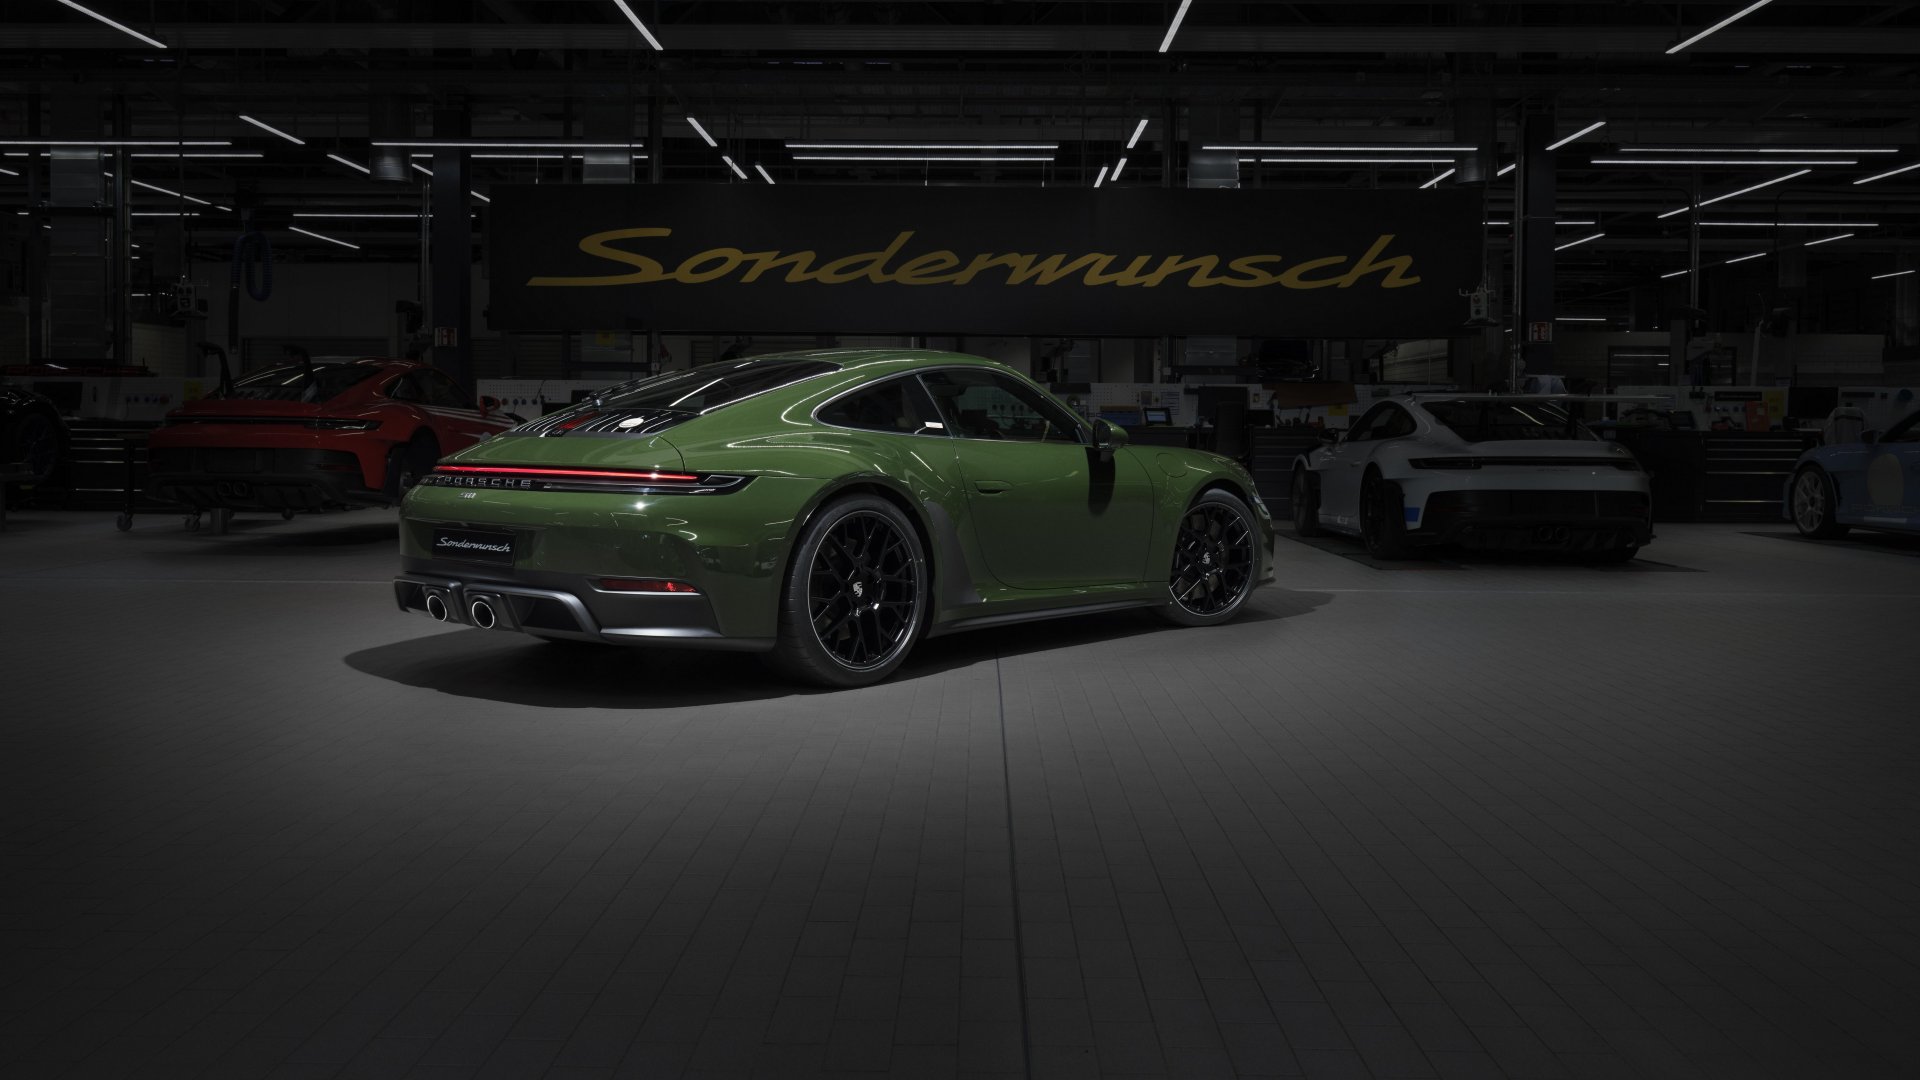 Porsche 911 Cuarenta Edition – Độc bản được chế tác bởi nhóm cá nhân hóa Sonderwunsch